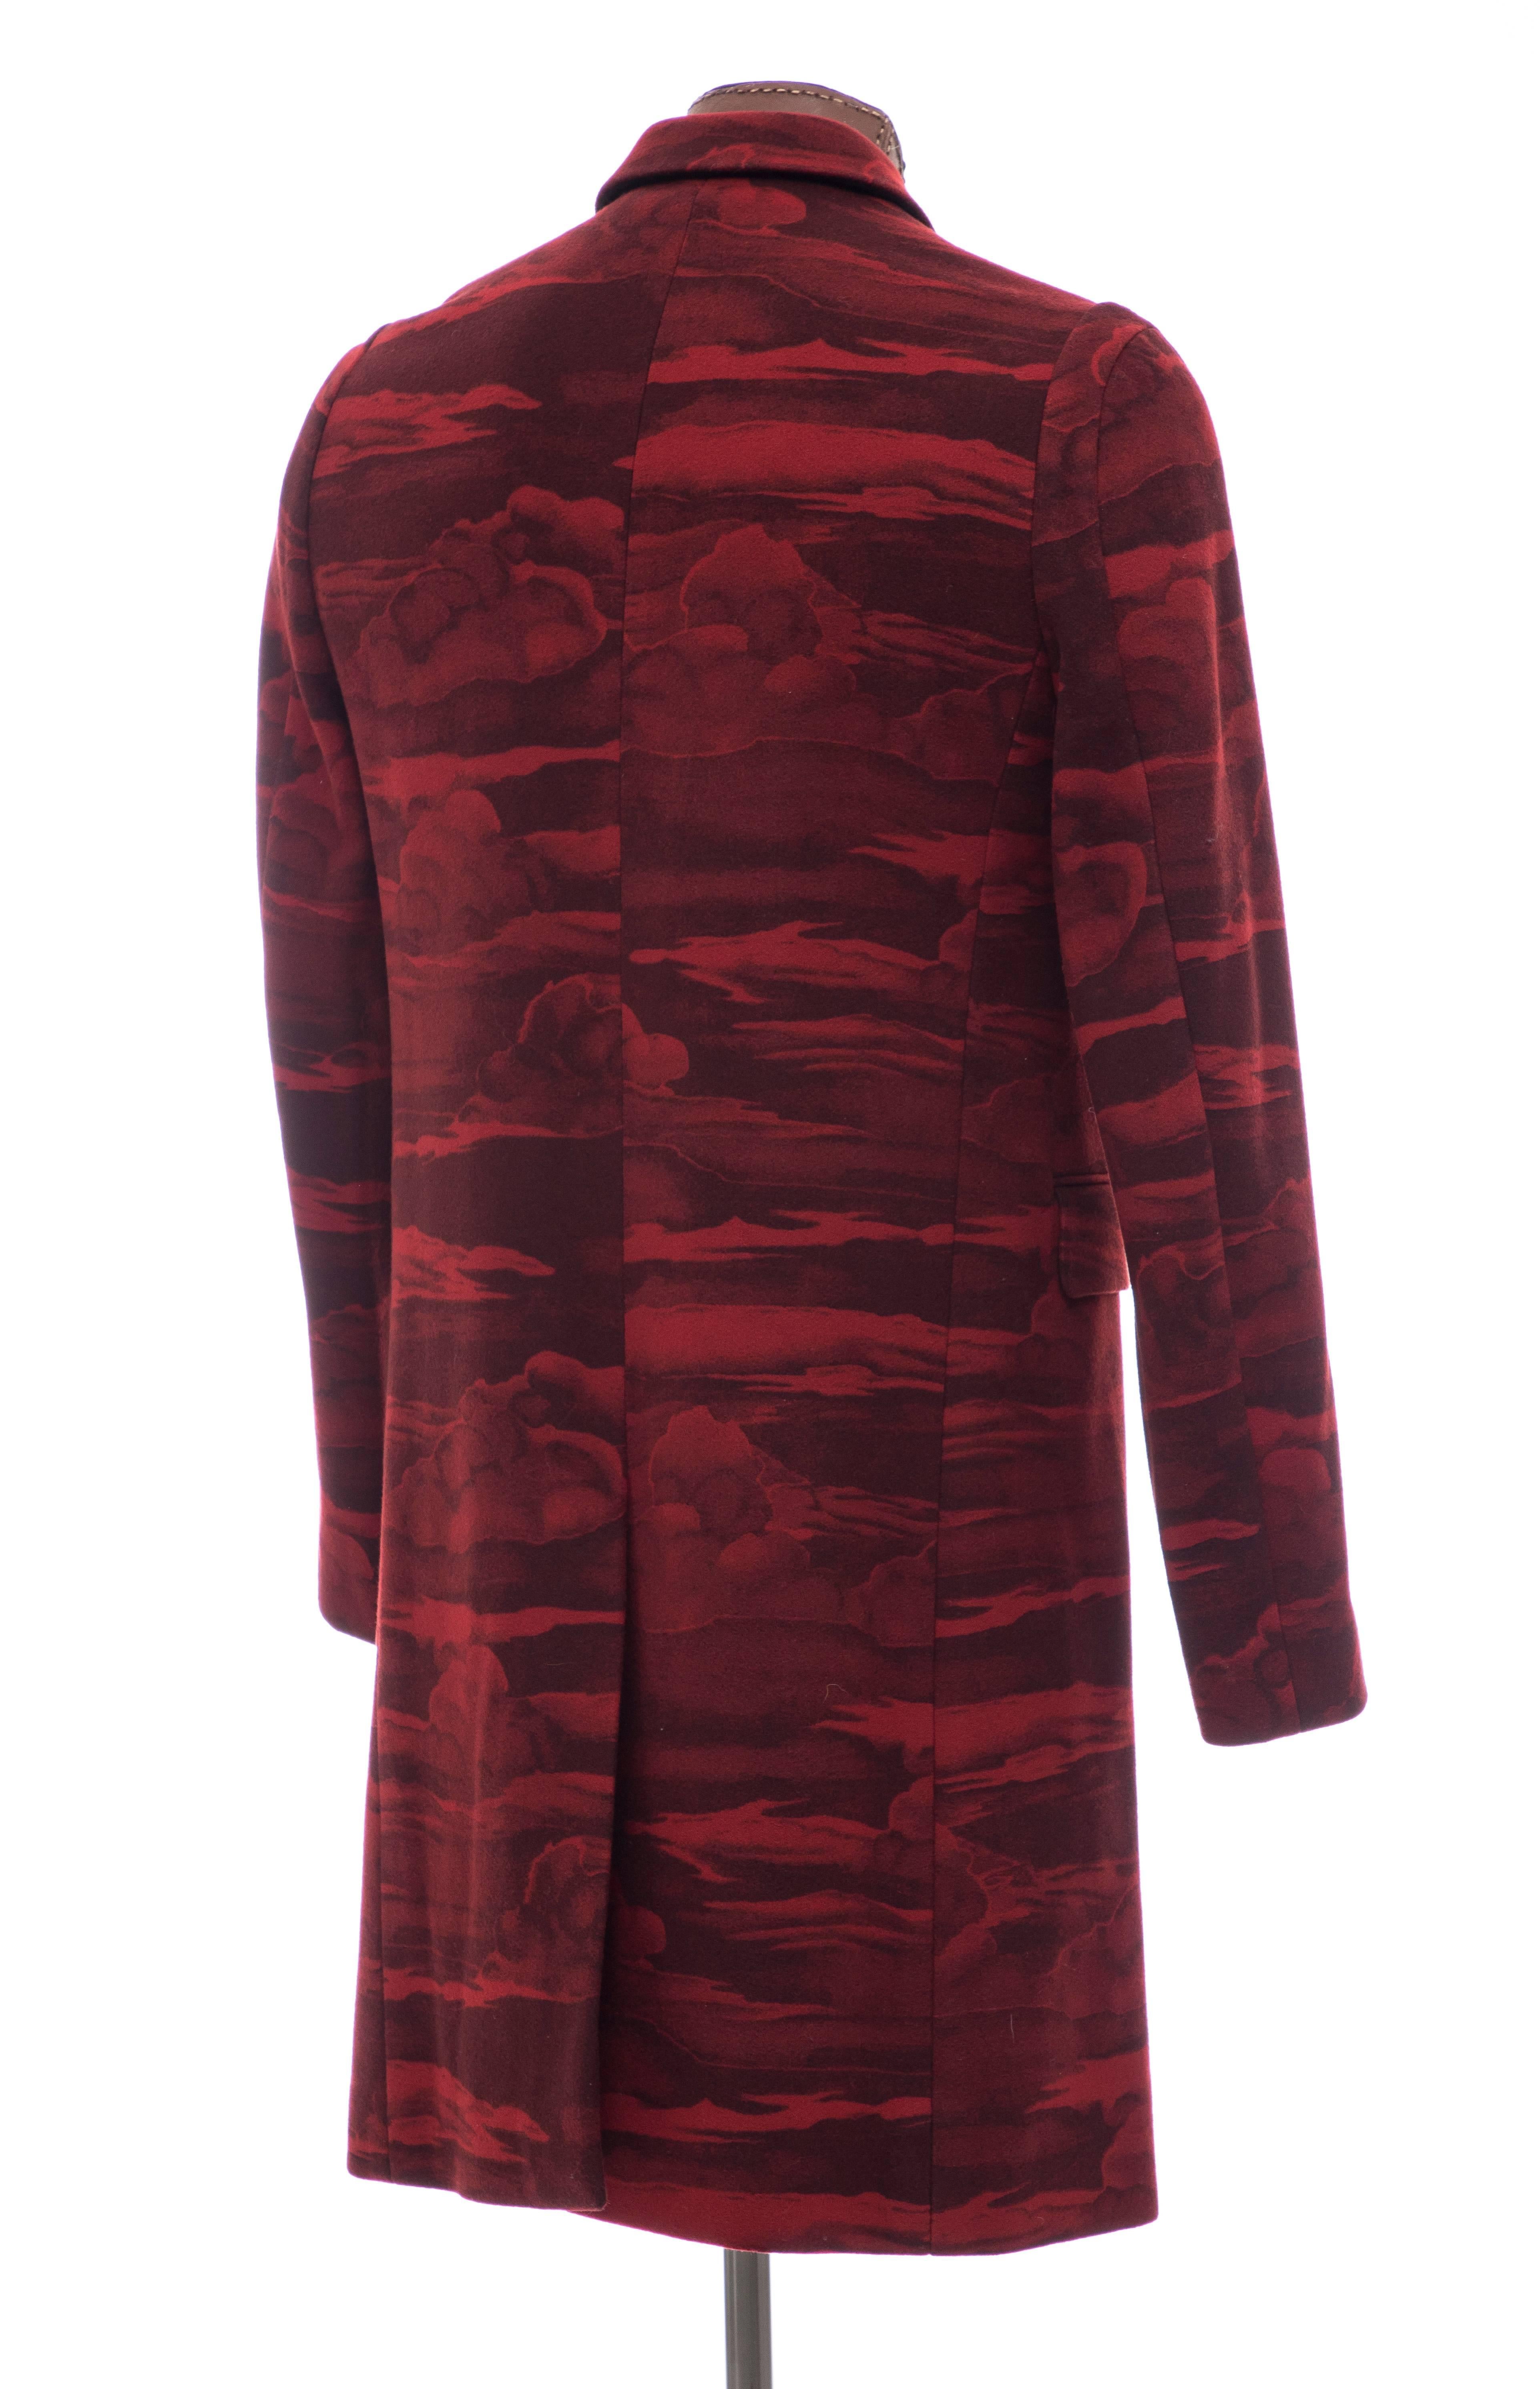 Kenzo Men's Runway Wool Red Cloud Print Coat, Fall 2013 1